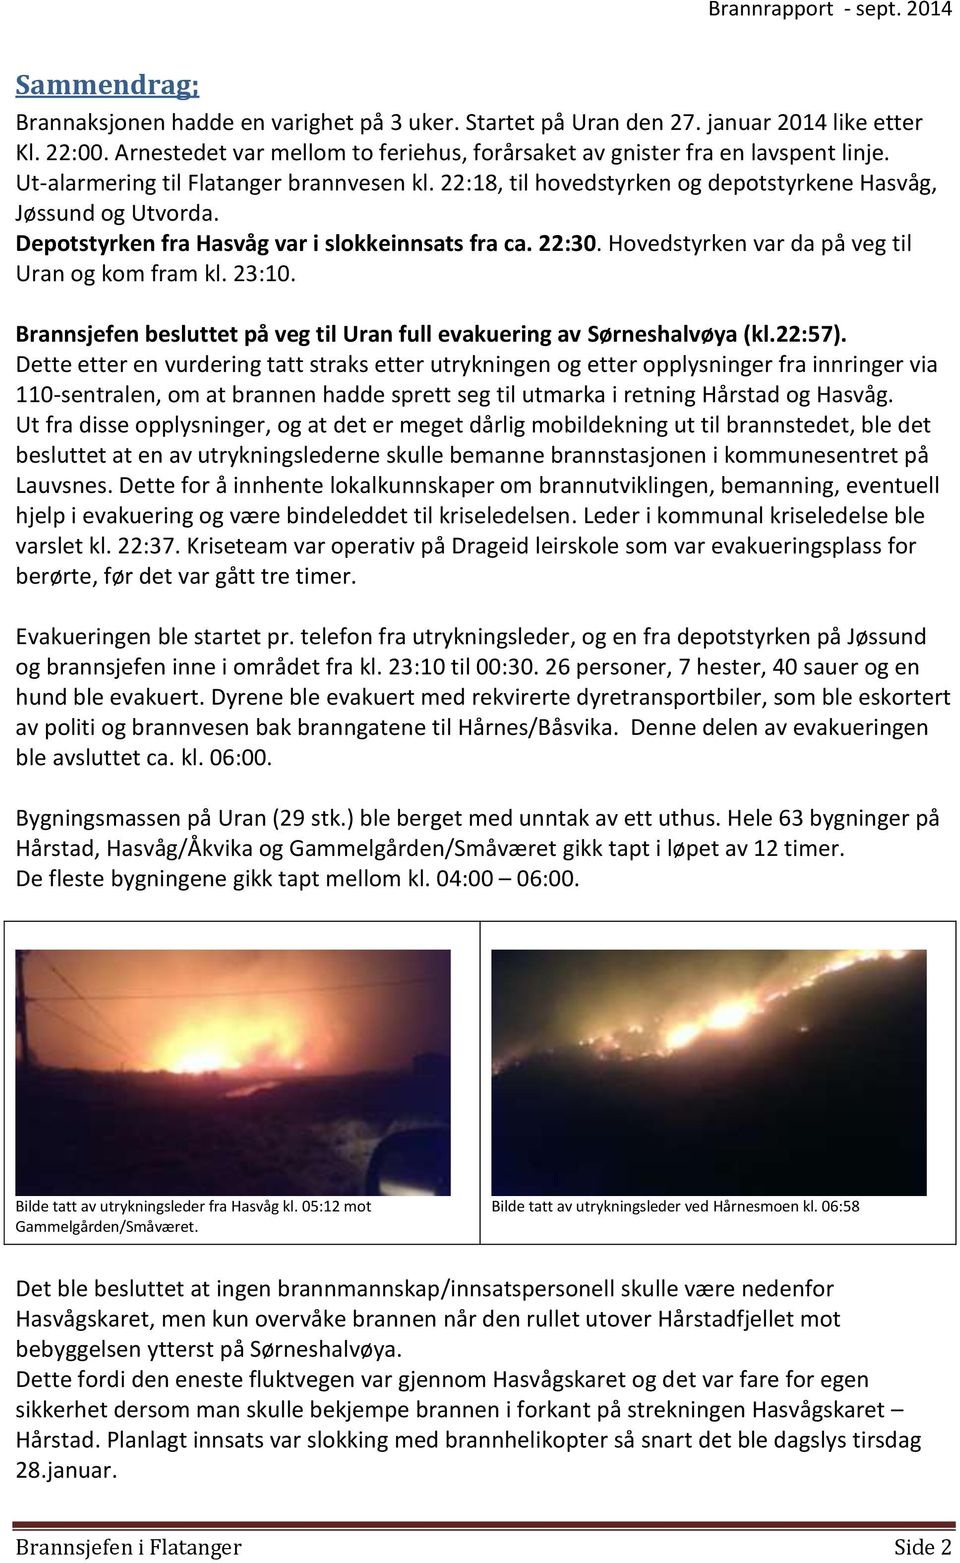 Hovedstyrken var da på veg til Uran og kom fram kl. 23:10. Brannsjefen besluttet på veg til Uran full evakuering av Sørneshalvøya (kl.22:57).